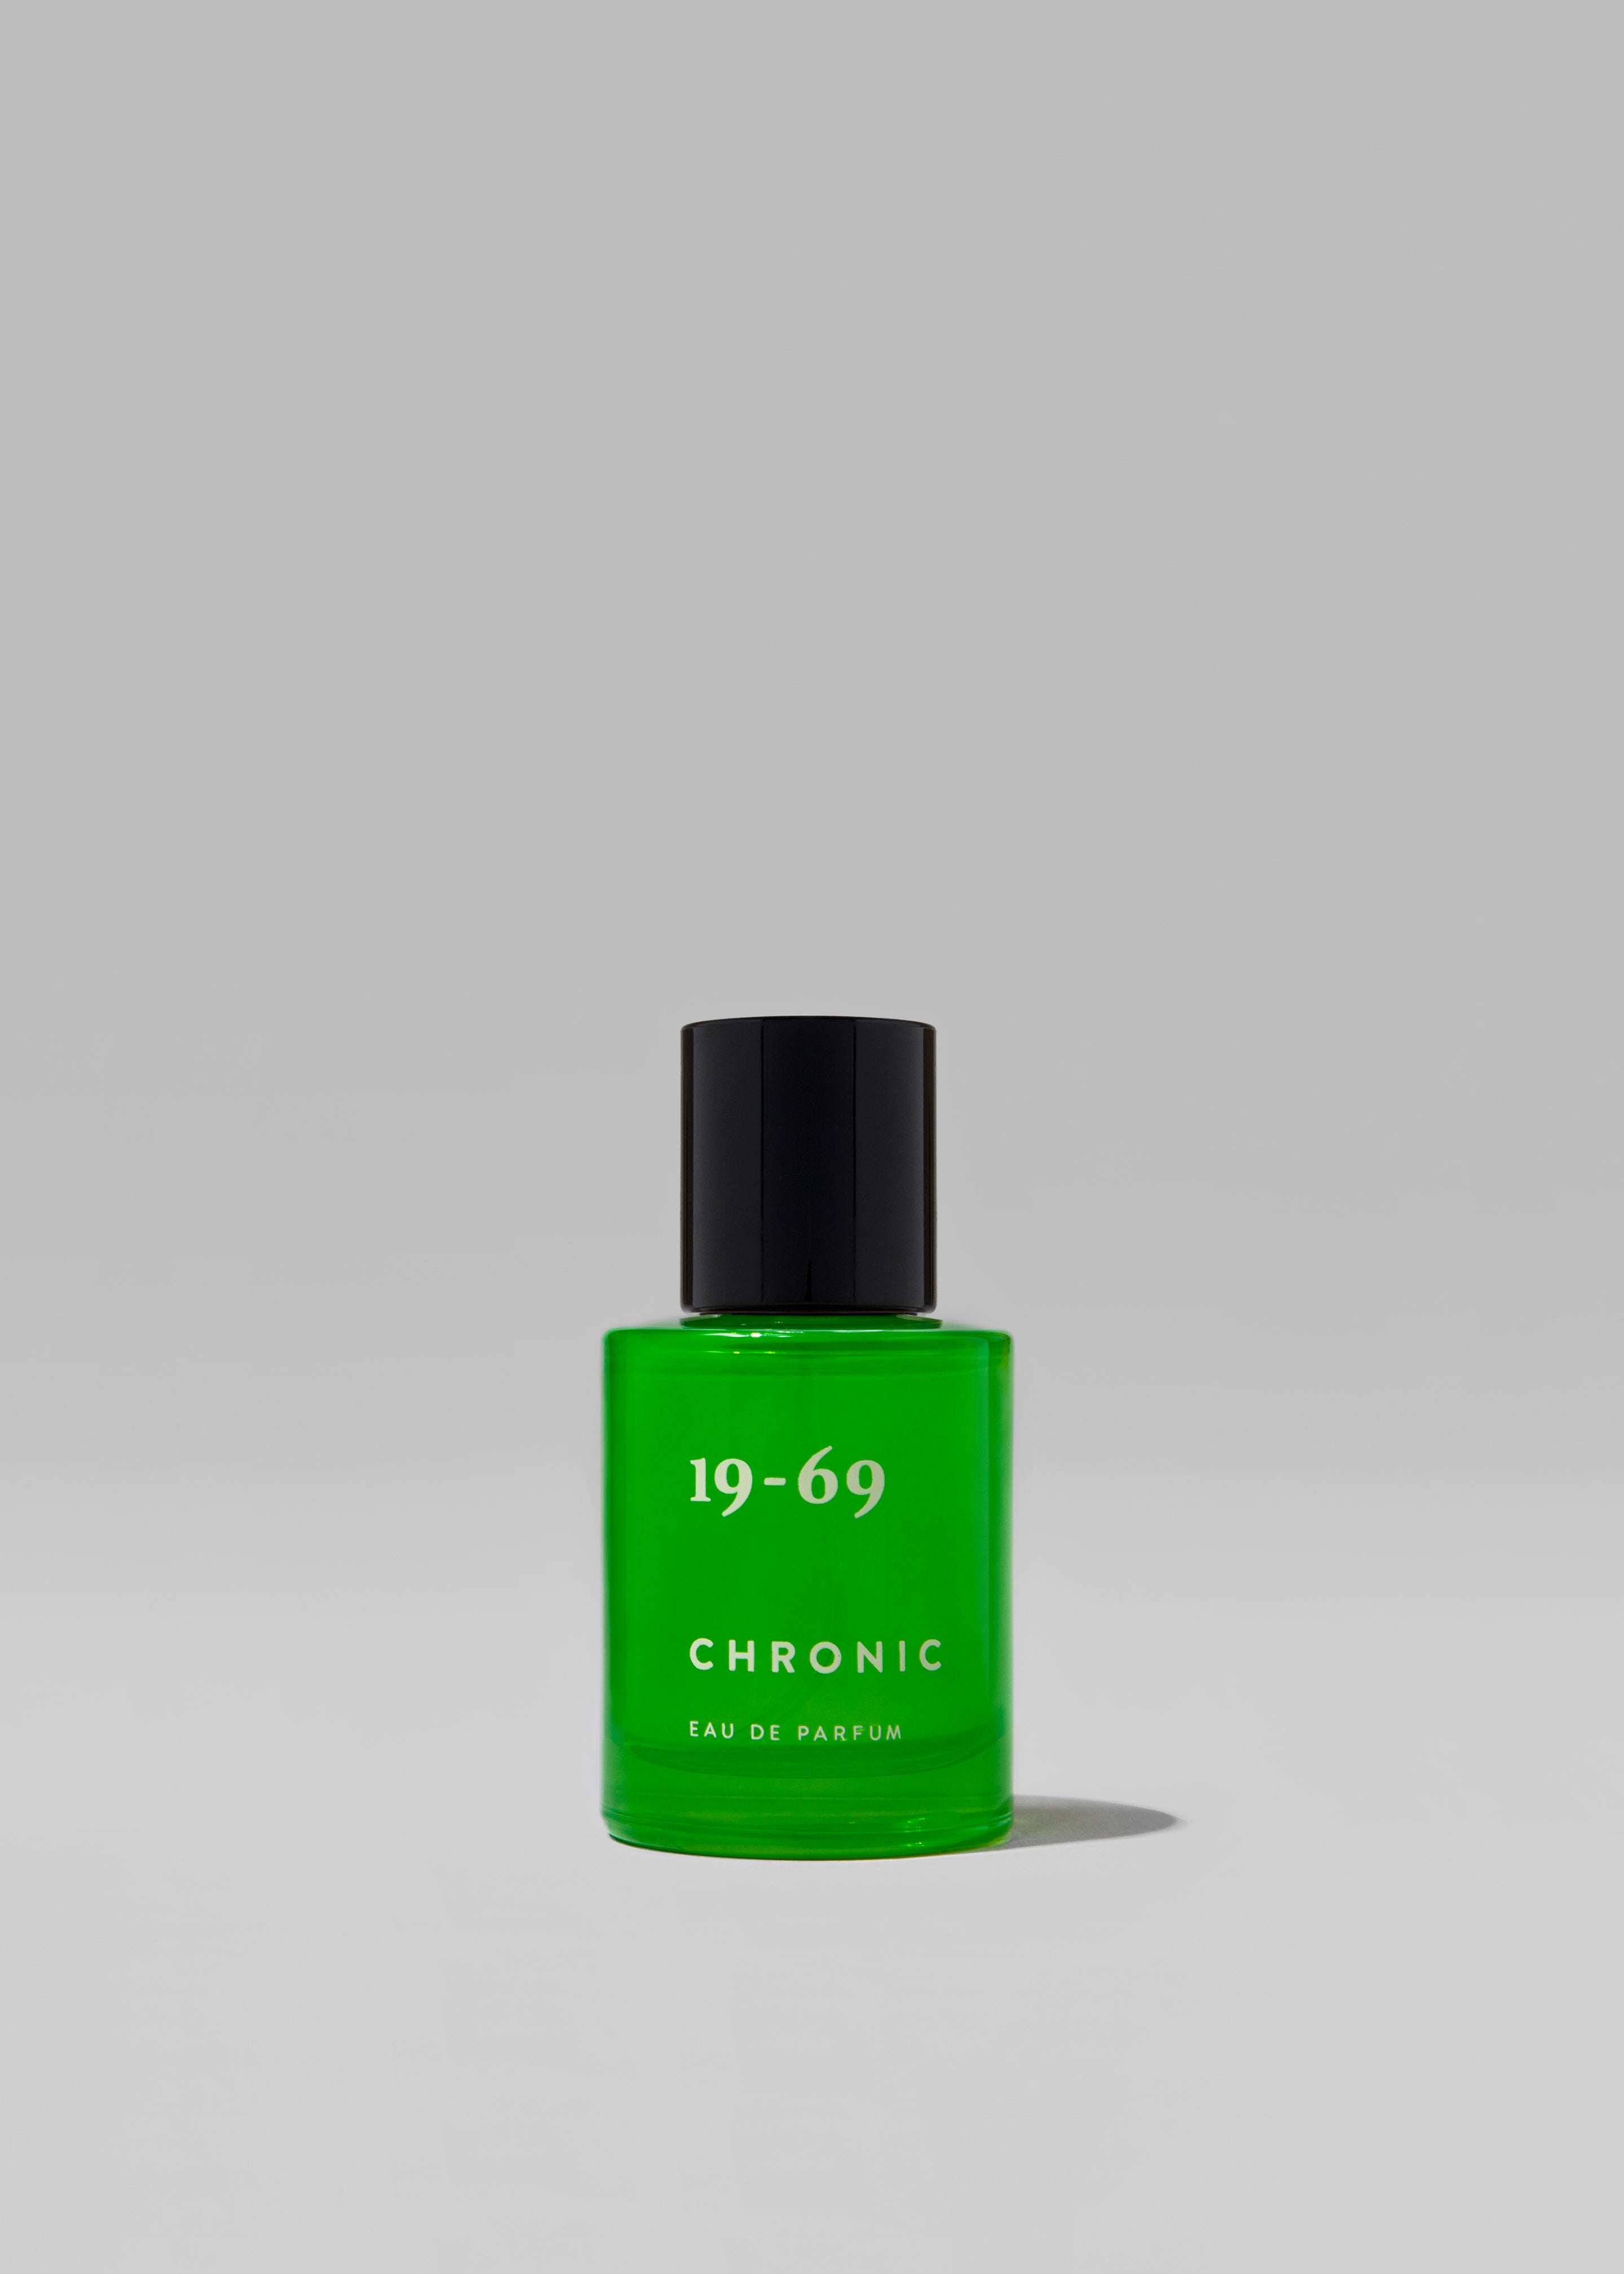 19-69 Chronic Eau de Parfum - 3